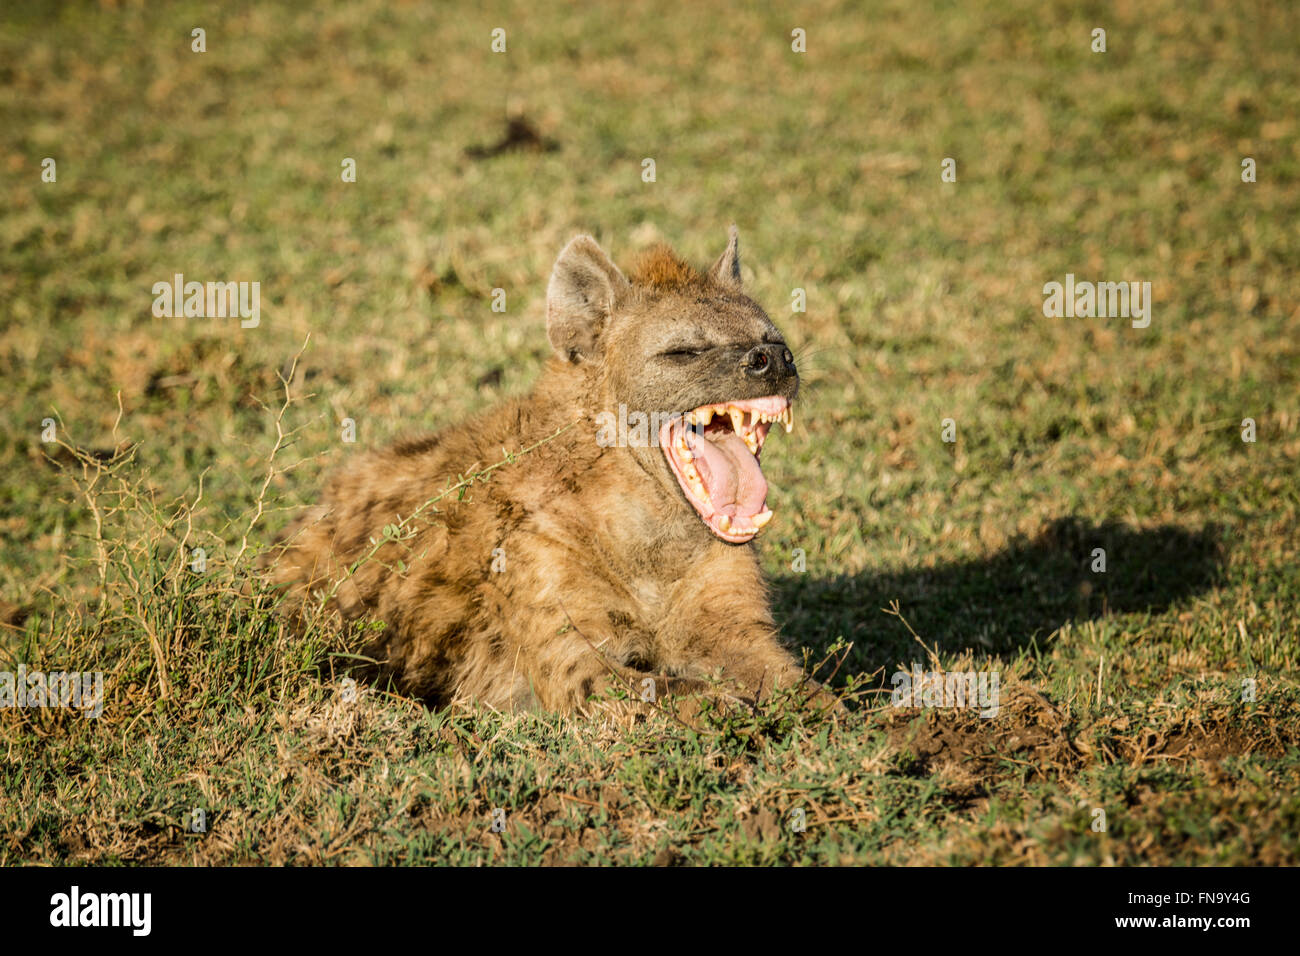 Hiena manchada, Crocuta crocuta, bostezar con la boca abierta, mostrando sus dientes, Reserva Nacional de Masai Mara, Kenya, Africa. Foto de stock